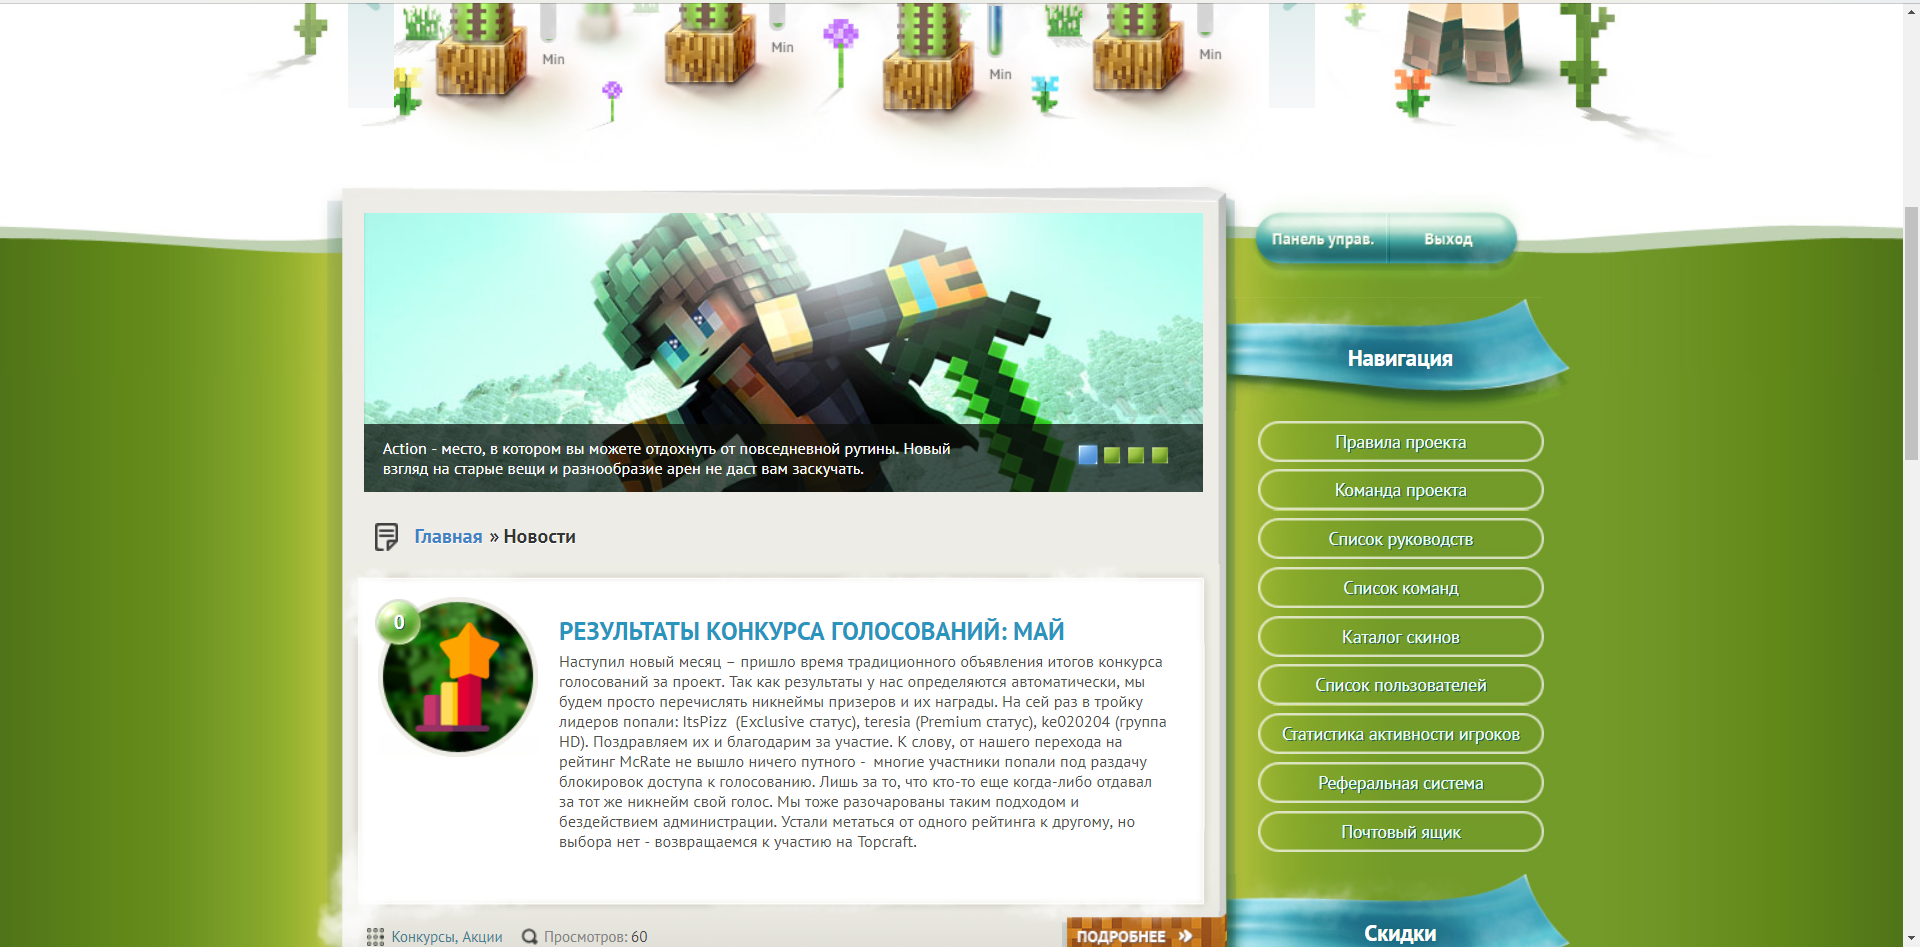 Grand-Mine.ru: Изменение задней палитры на сайте и форуме с текущем сезоном